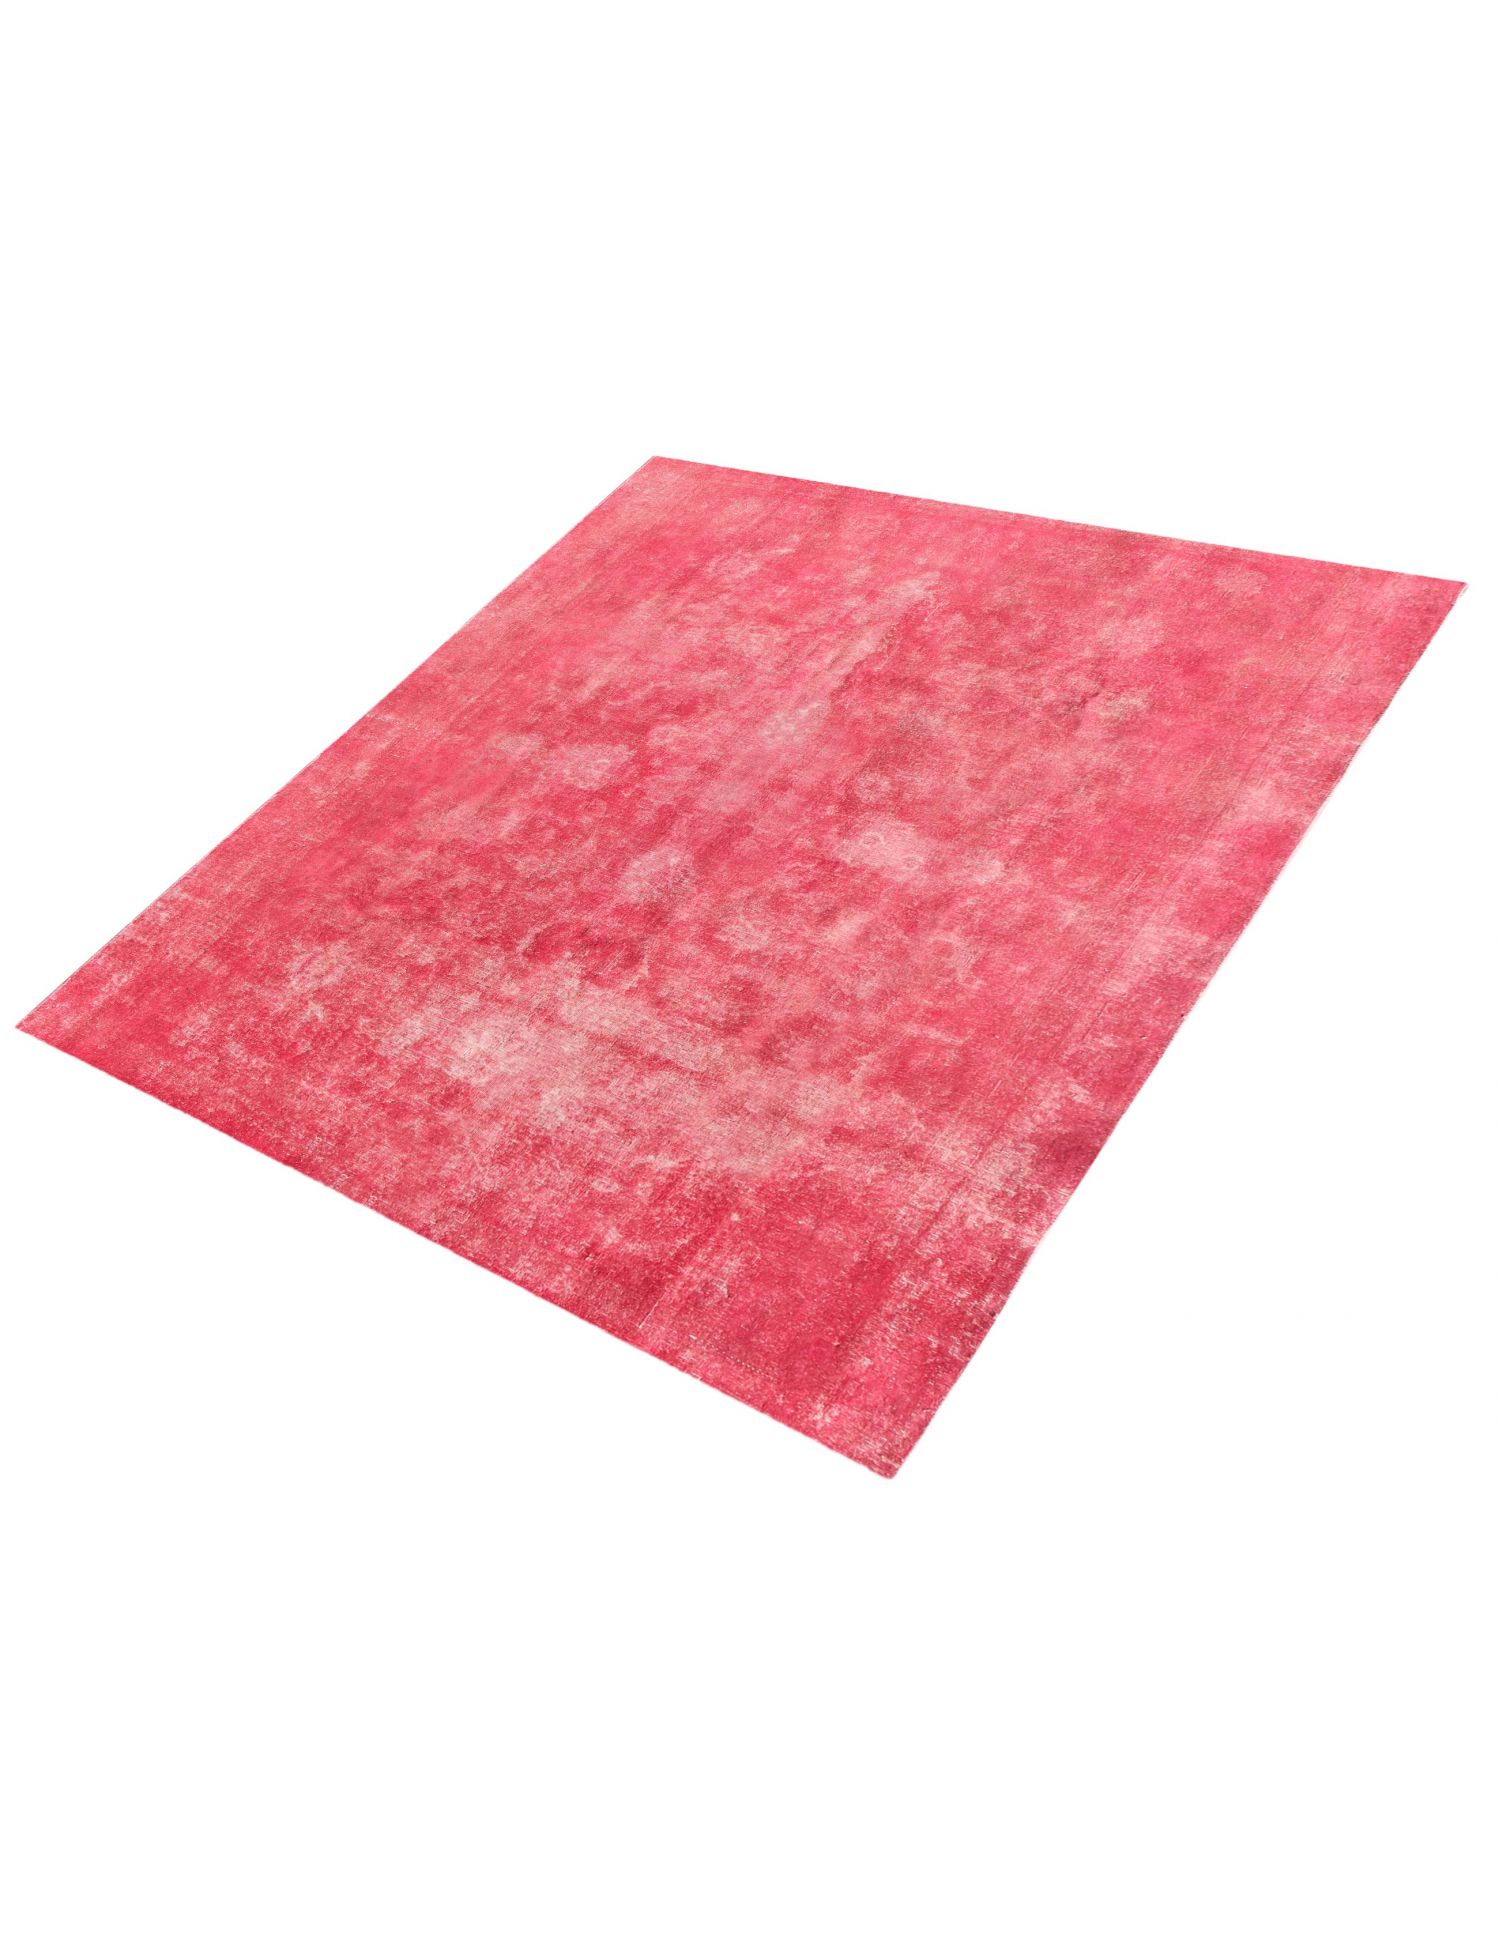 Persischer Vintage Teppich  rosa <br/>270 x 220 cm